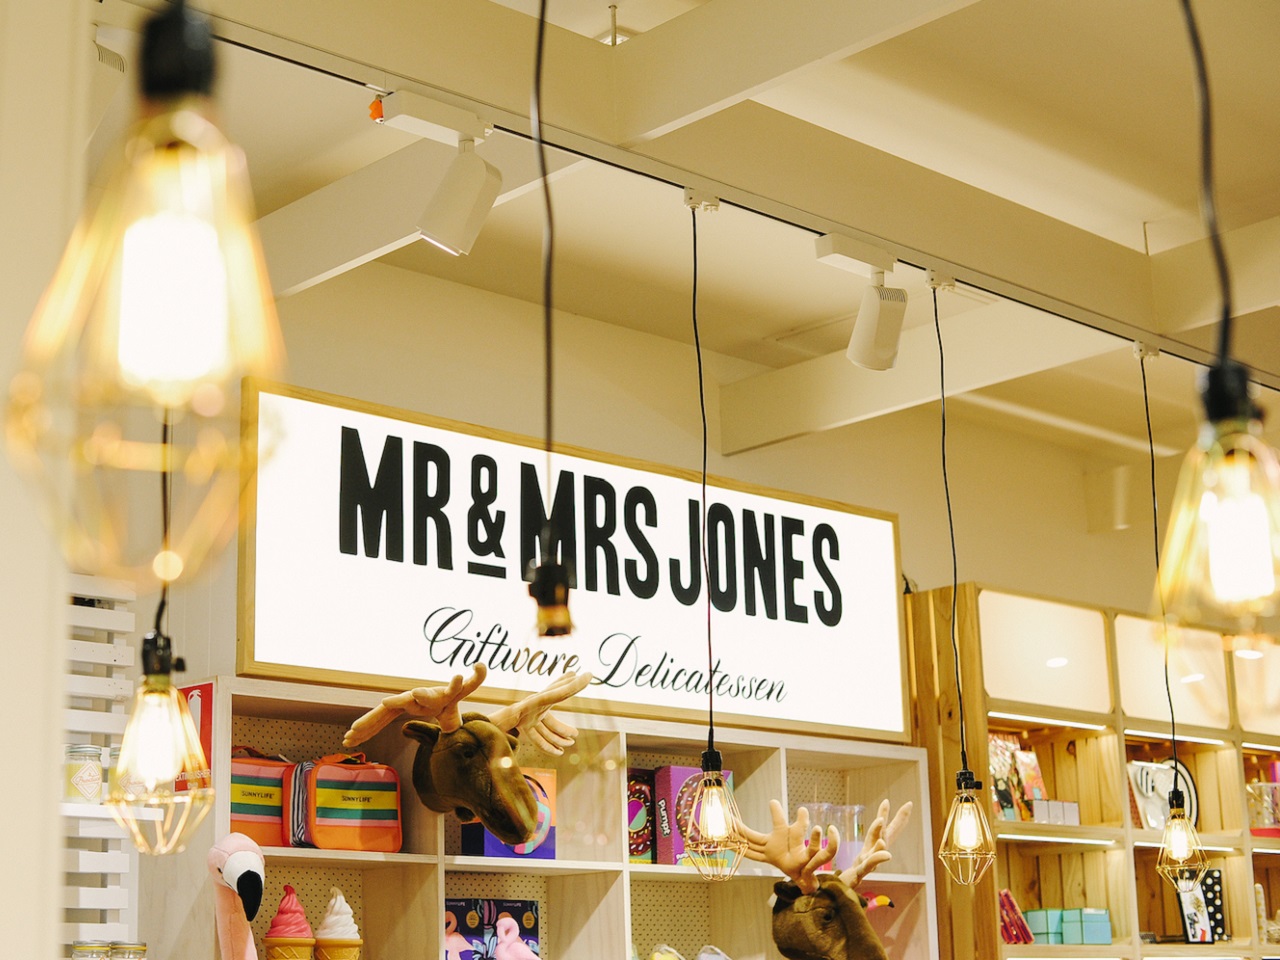 Mr & Mrs Jones, The Giftware Delicatessens